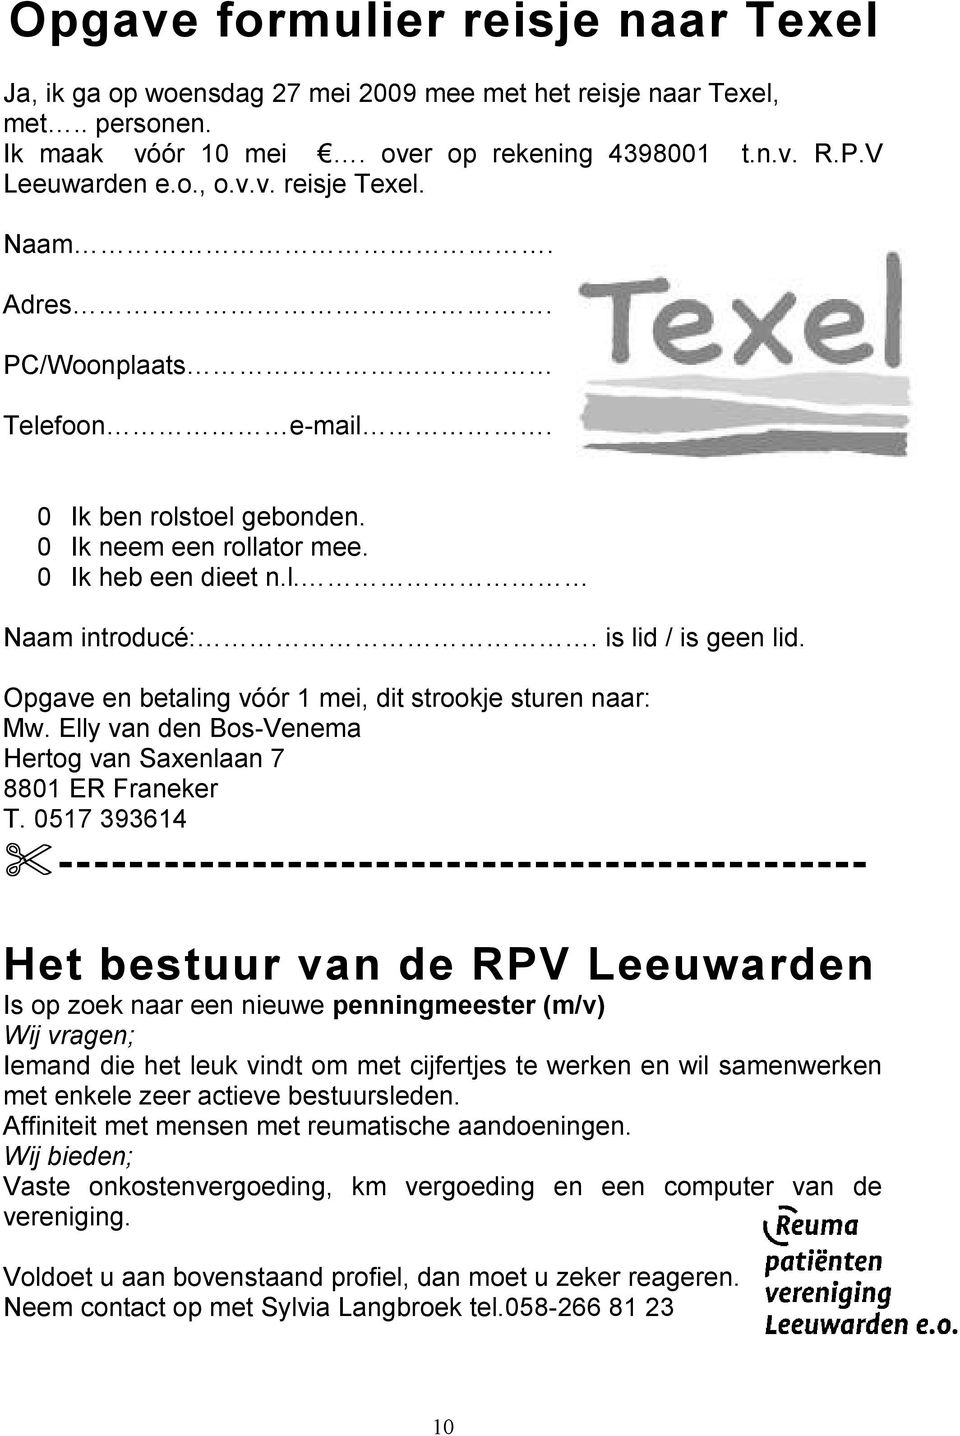 Opgave en betaling vóór 1 mei, dit strookje sturen naar: Mw. Elly van den Bos-Venema Hertog van Saxenlaan 7 8801 ER Franeker T.